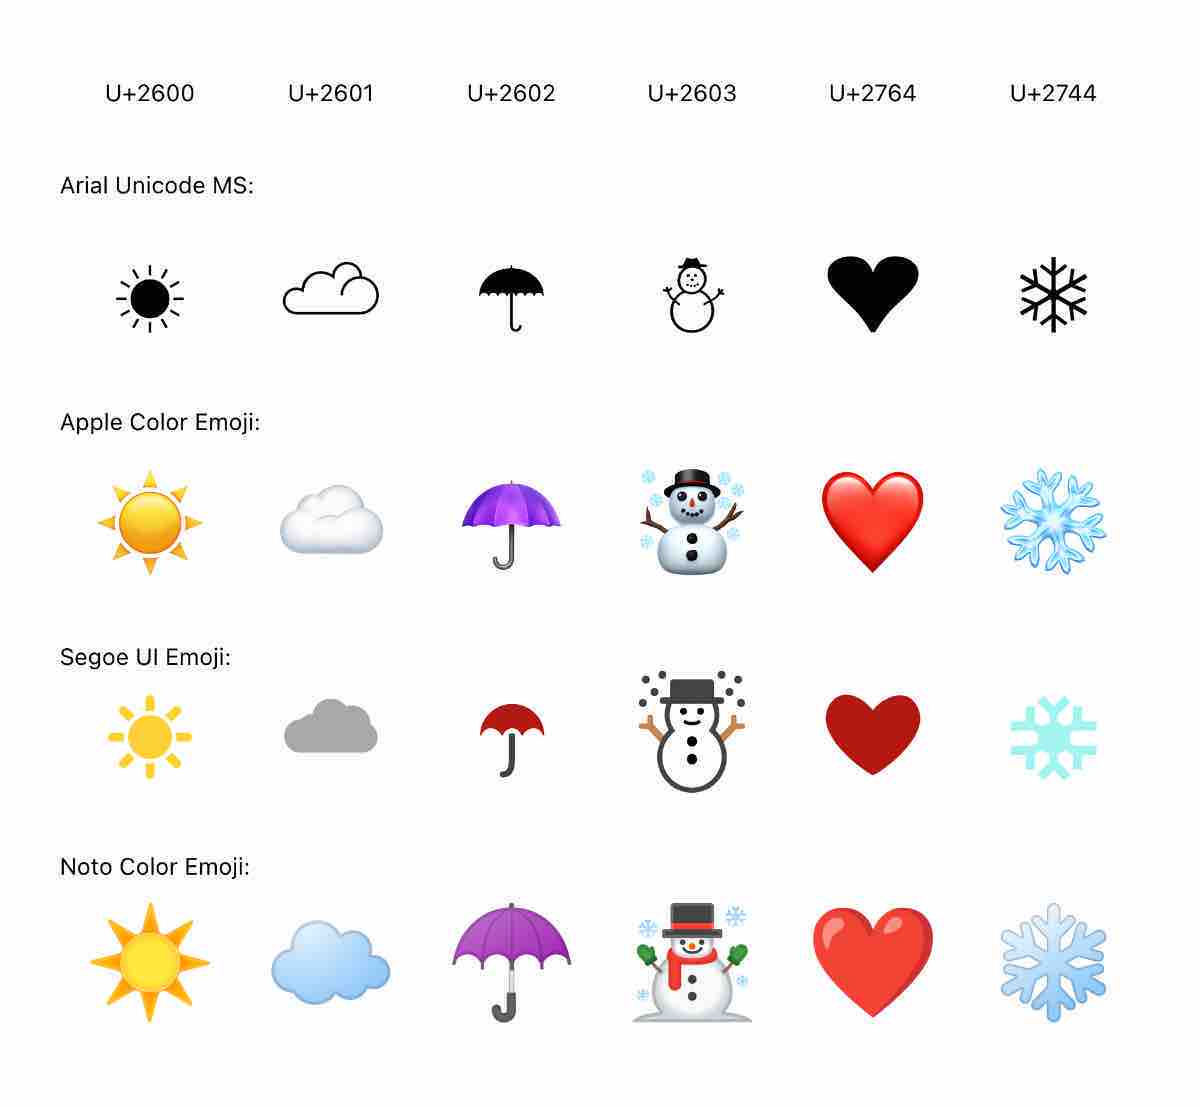 不同 emoji 字体的显示效果